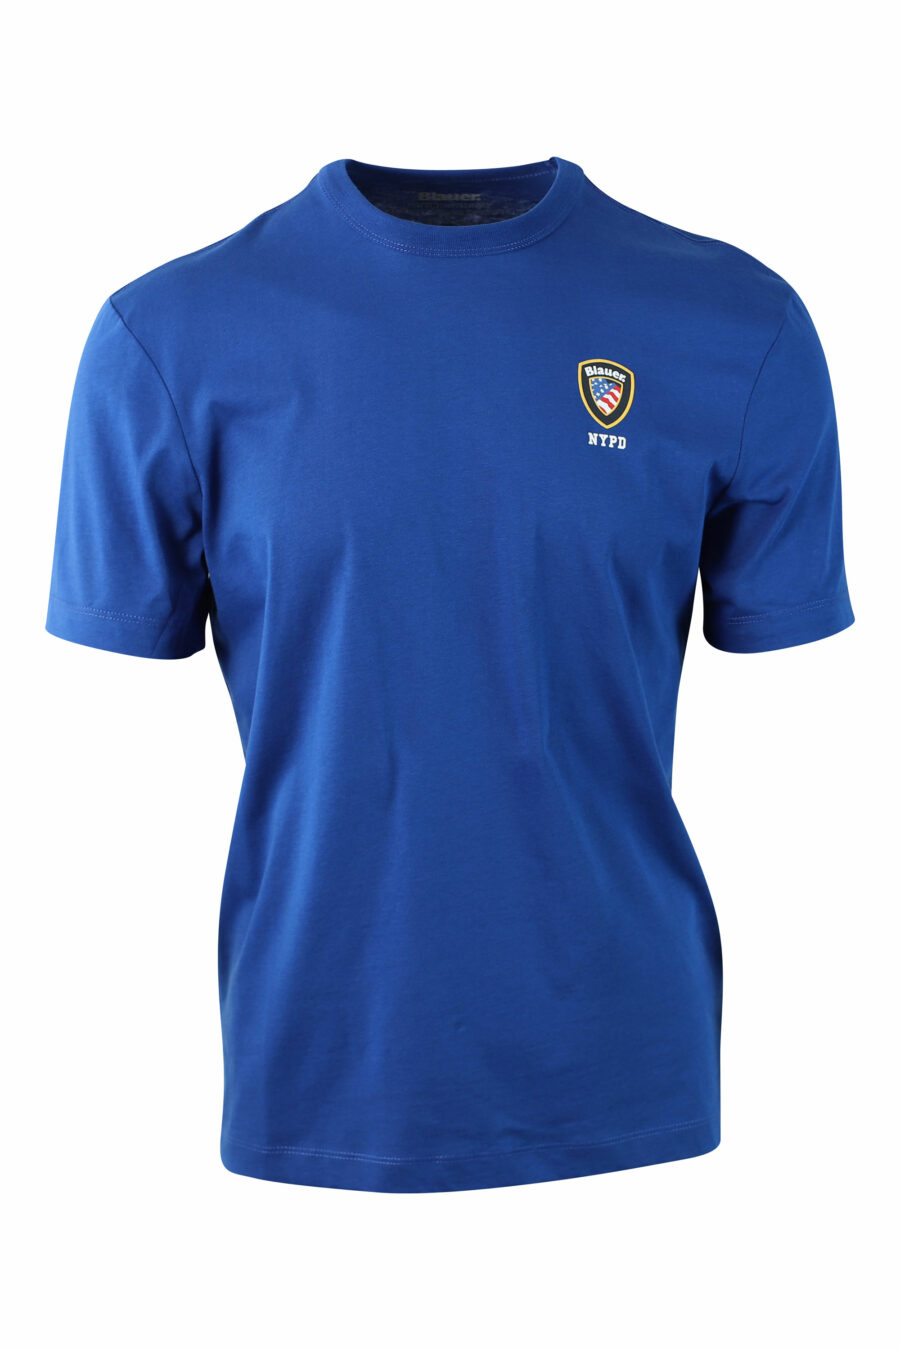 Camiseta azul con minilogo escudo - IMG 0004